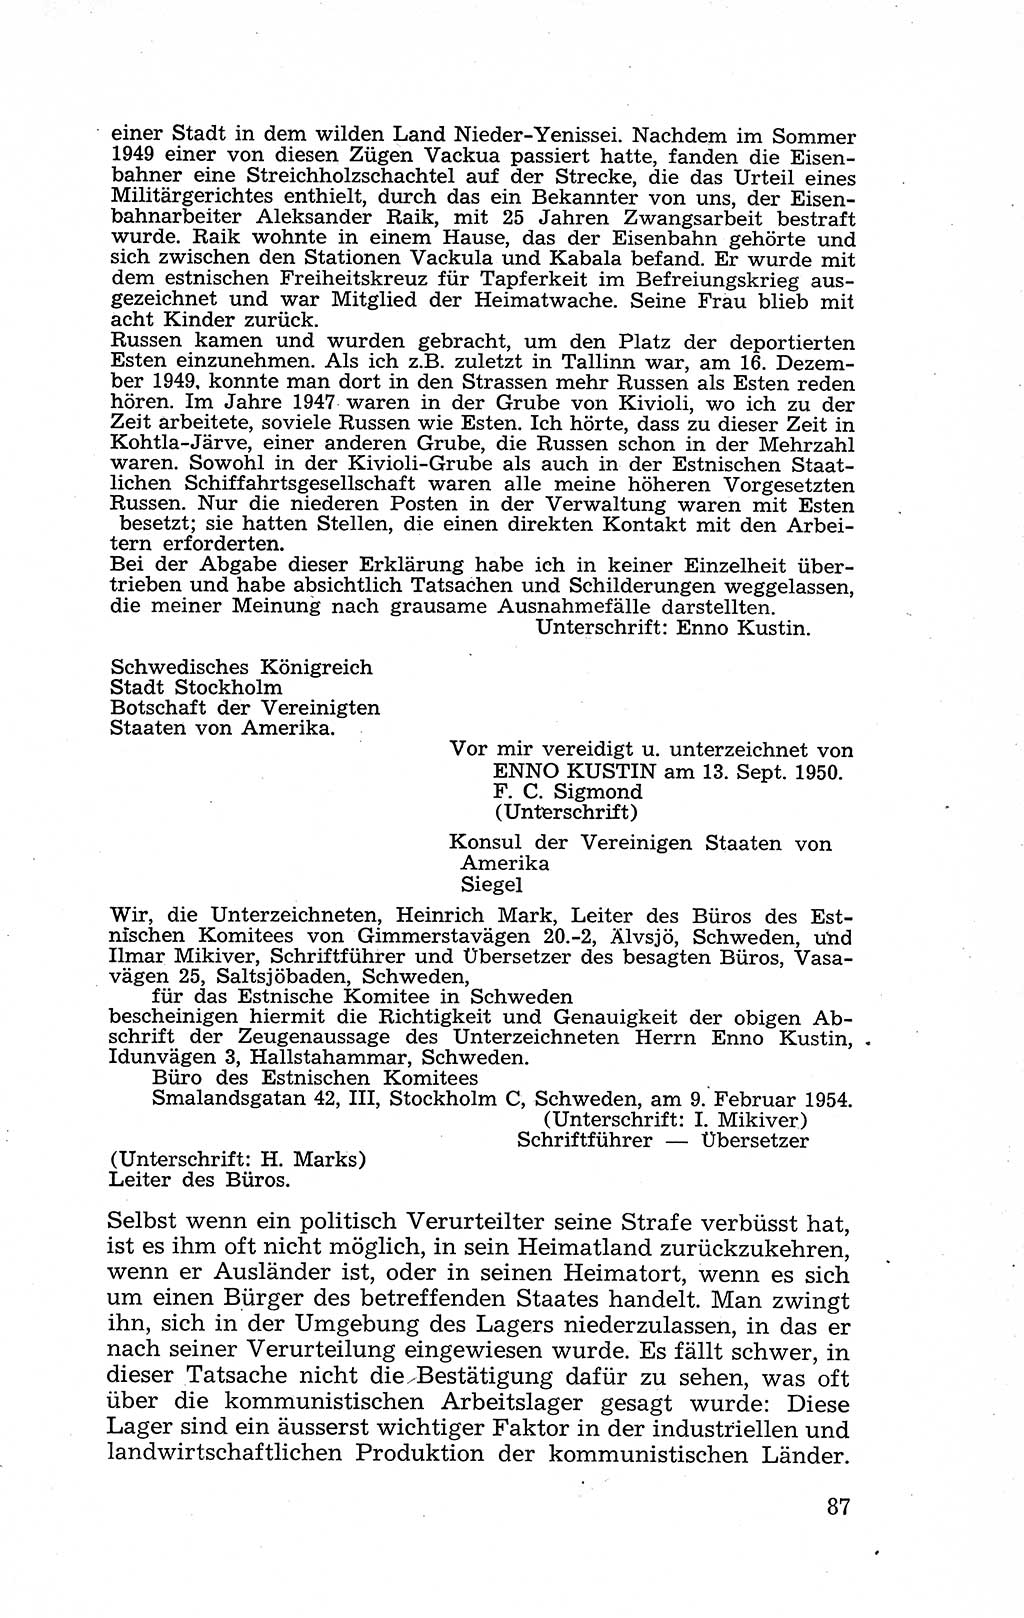 Recht in Fesseln, Dokumente, Internationale Juristen-Kommission [Bundesrepublik Deutschland (BRD)] 1955, Seite 87 (R. Dok. IJK BRD 1955, S. 87)